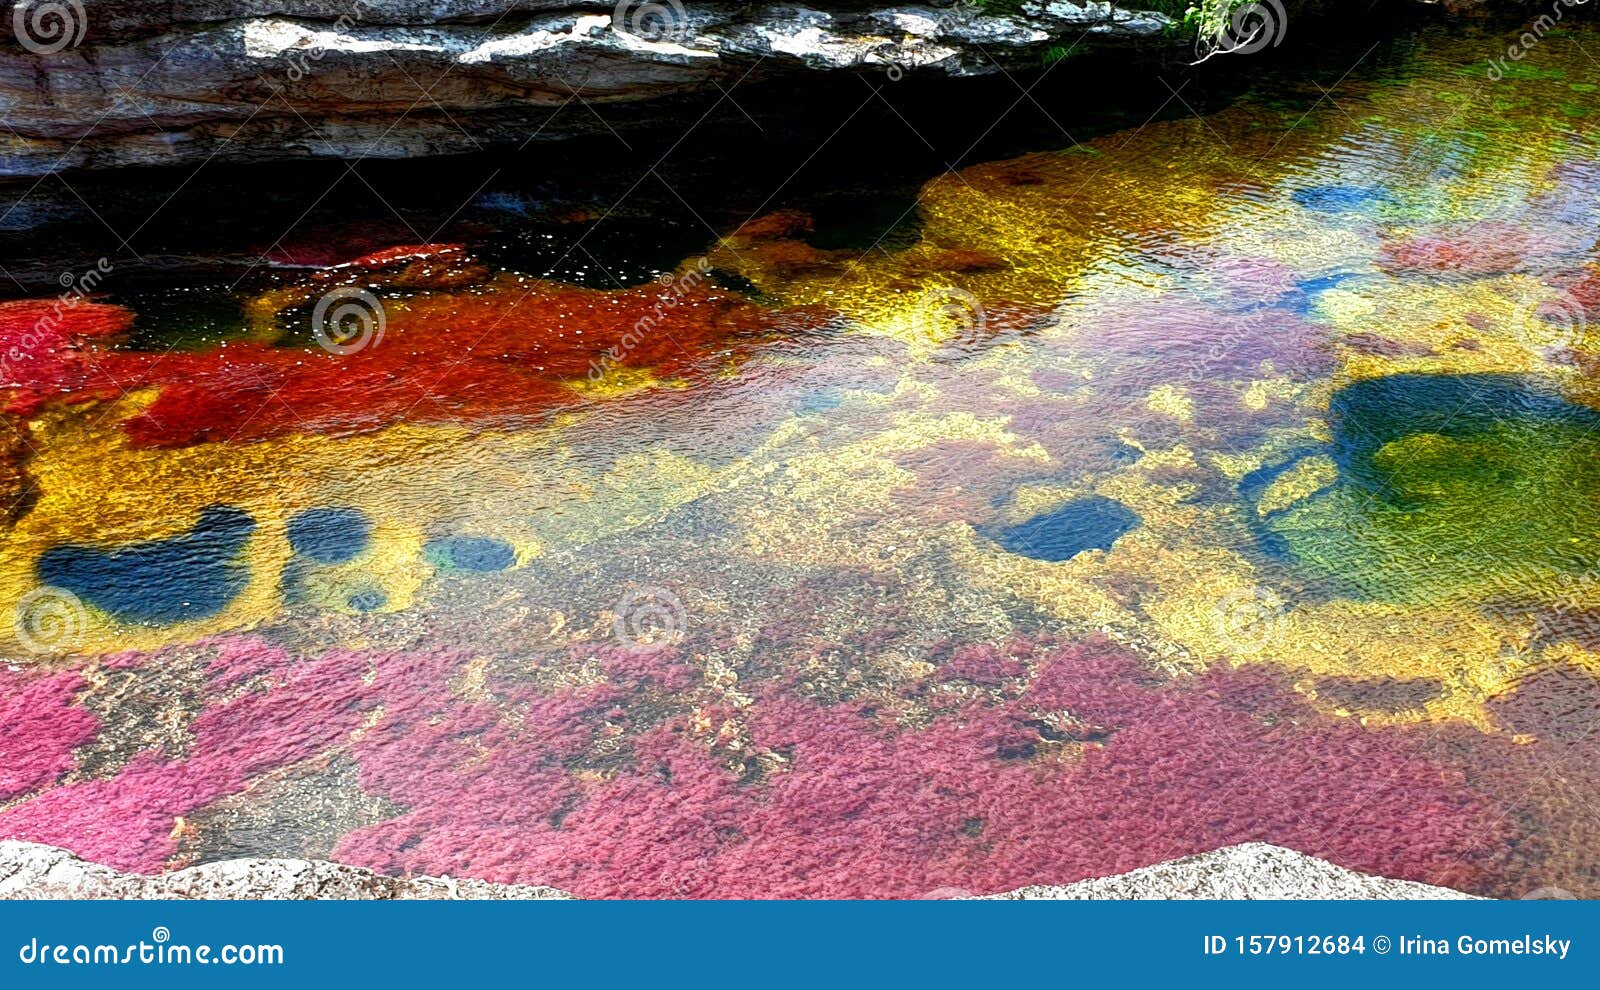 multicolored river cano cristales, serrania de la macarena national park, colombia